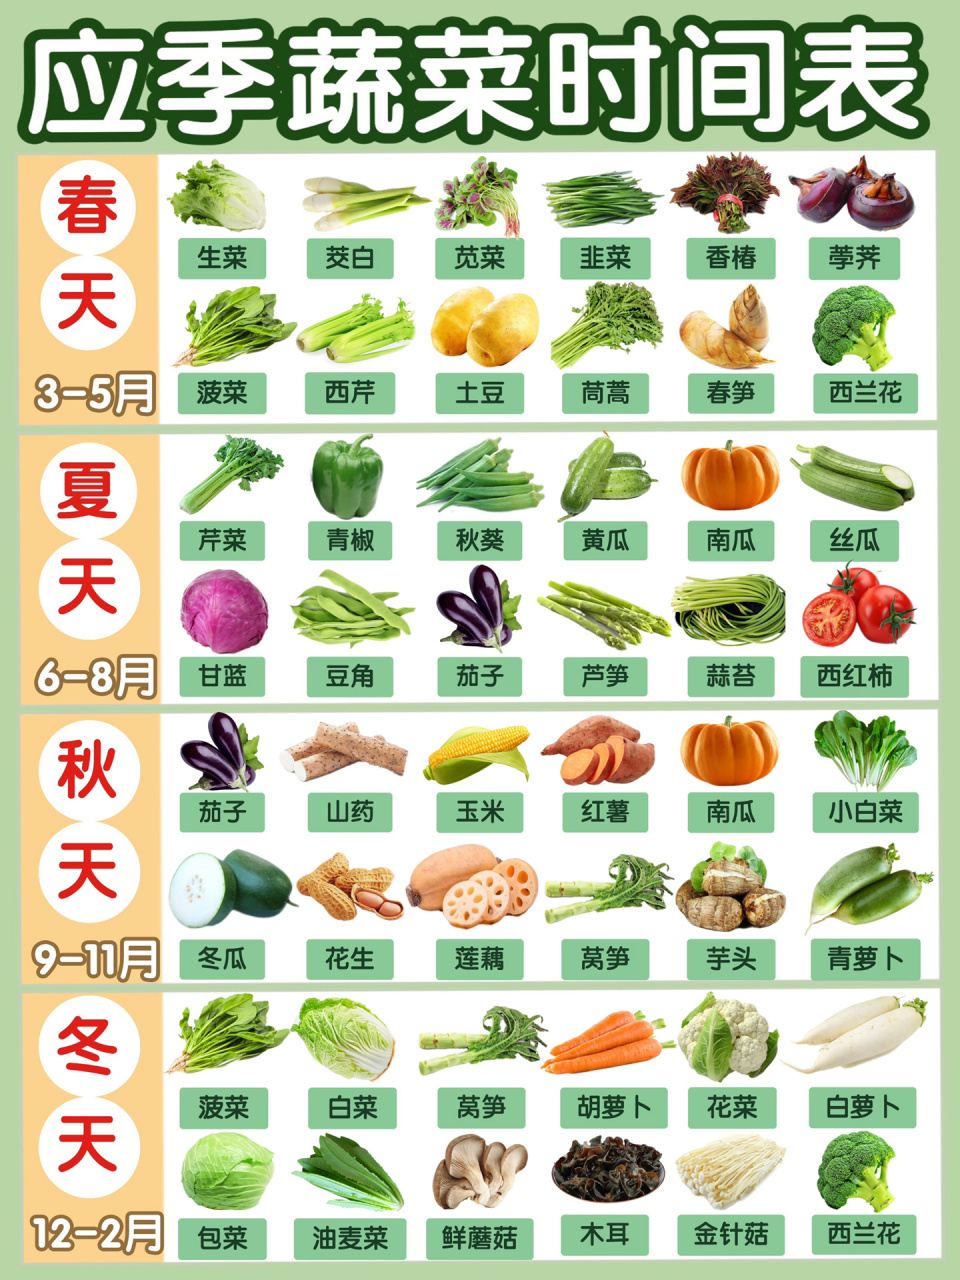 各种青菜的名字和图片图片